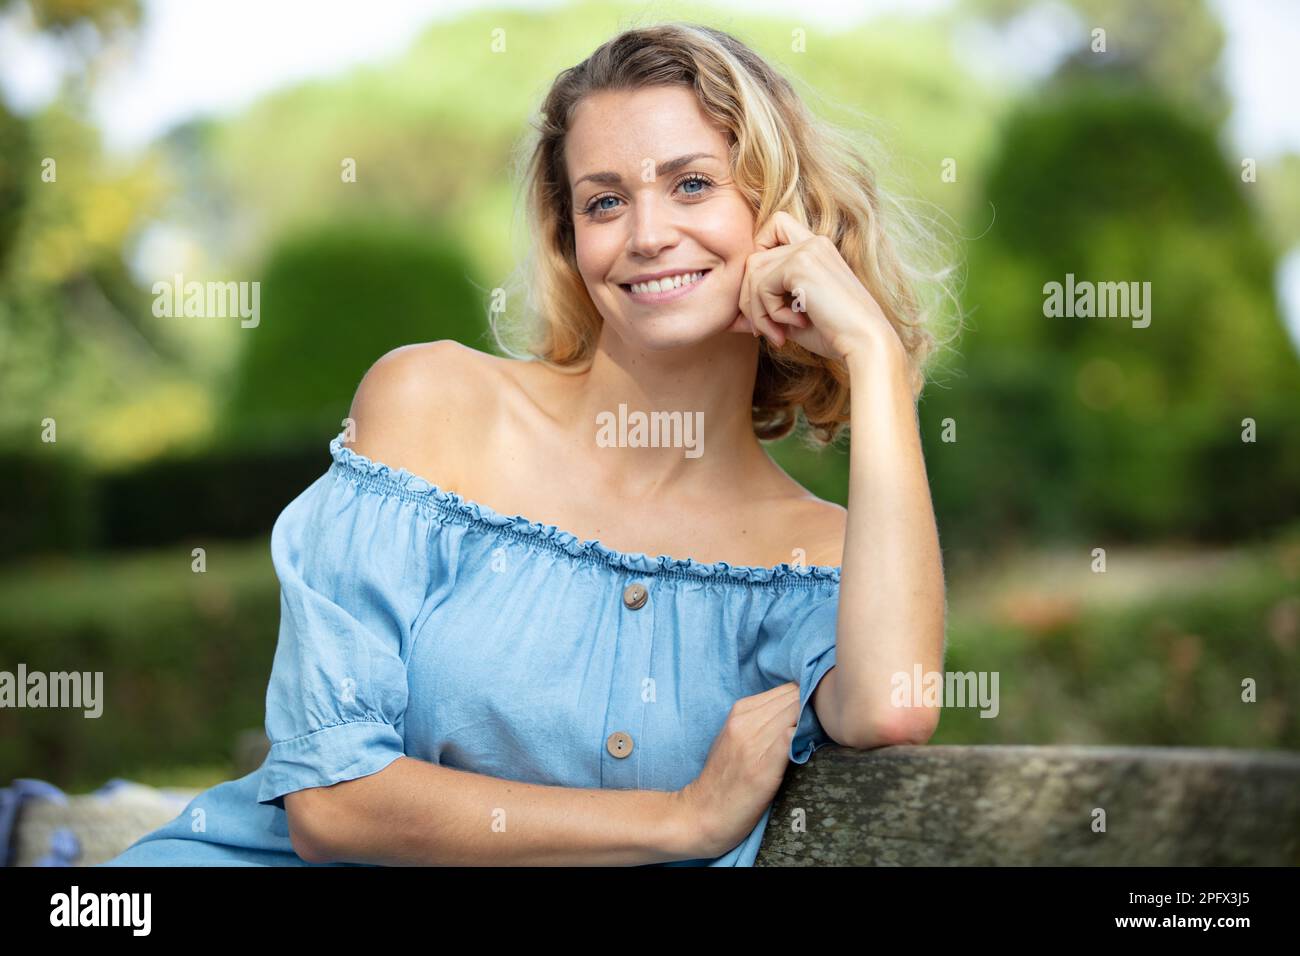 Ein hübsches Mädchen, das im Sommerpark posiert Stockfoto